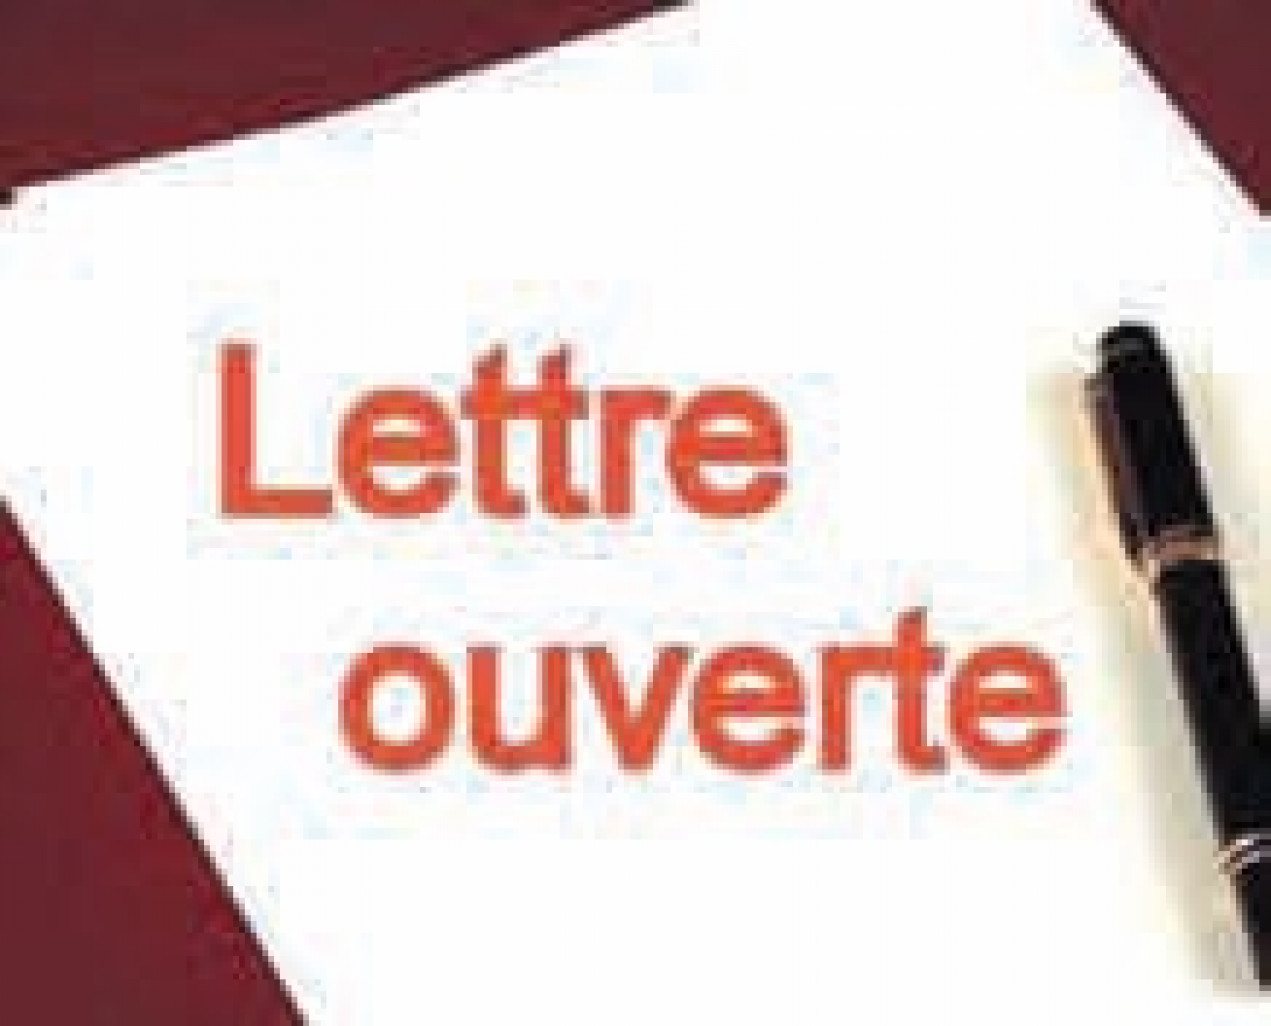 Dans une lettre ouverte datée du 31 octobre, adressée à Jean-Pierre Masseret, le président du Conseil régional de Lorraine, le Medef de Lorraine démontre son désaccord quasi-total avec le plan régional pour l’avenir de la Lorraine.